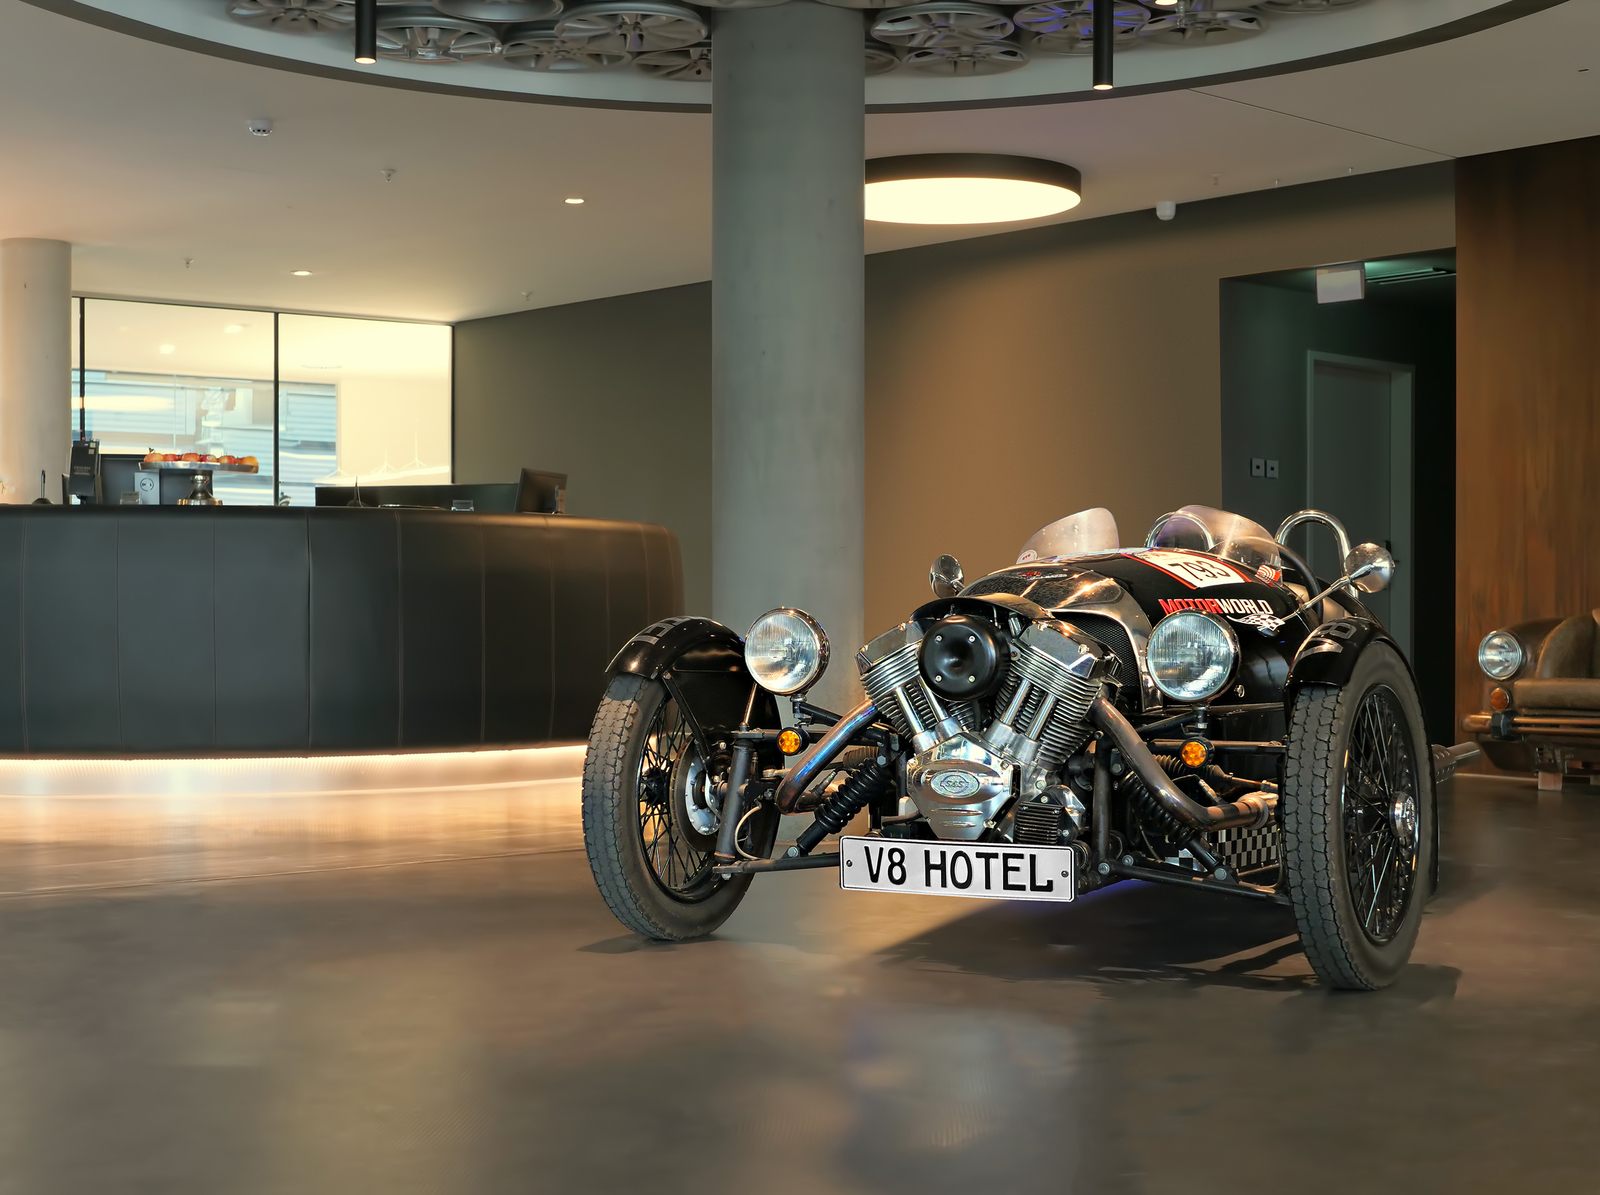 Ein schwarzes, altes Motorrad steht im Eingangsbereich des Hotels mit Kennzeichen "V8 Hotel".